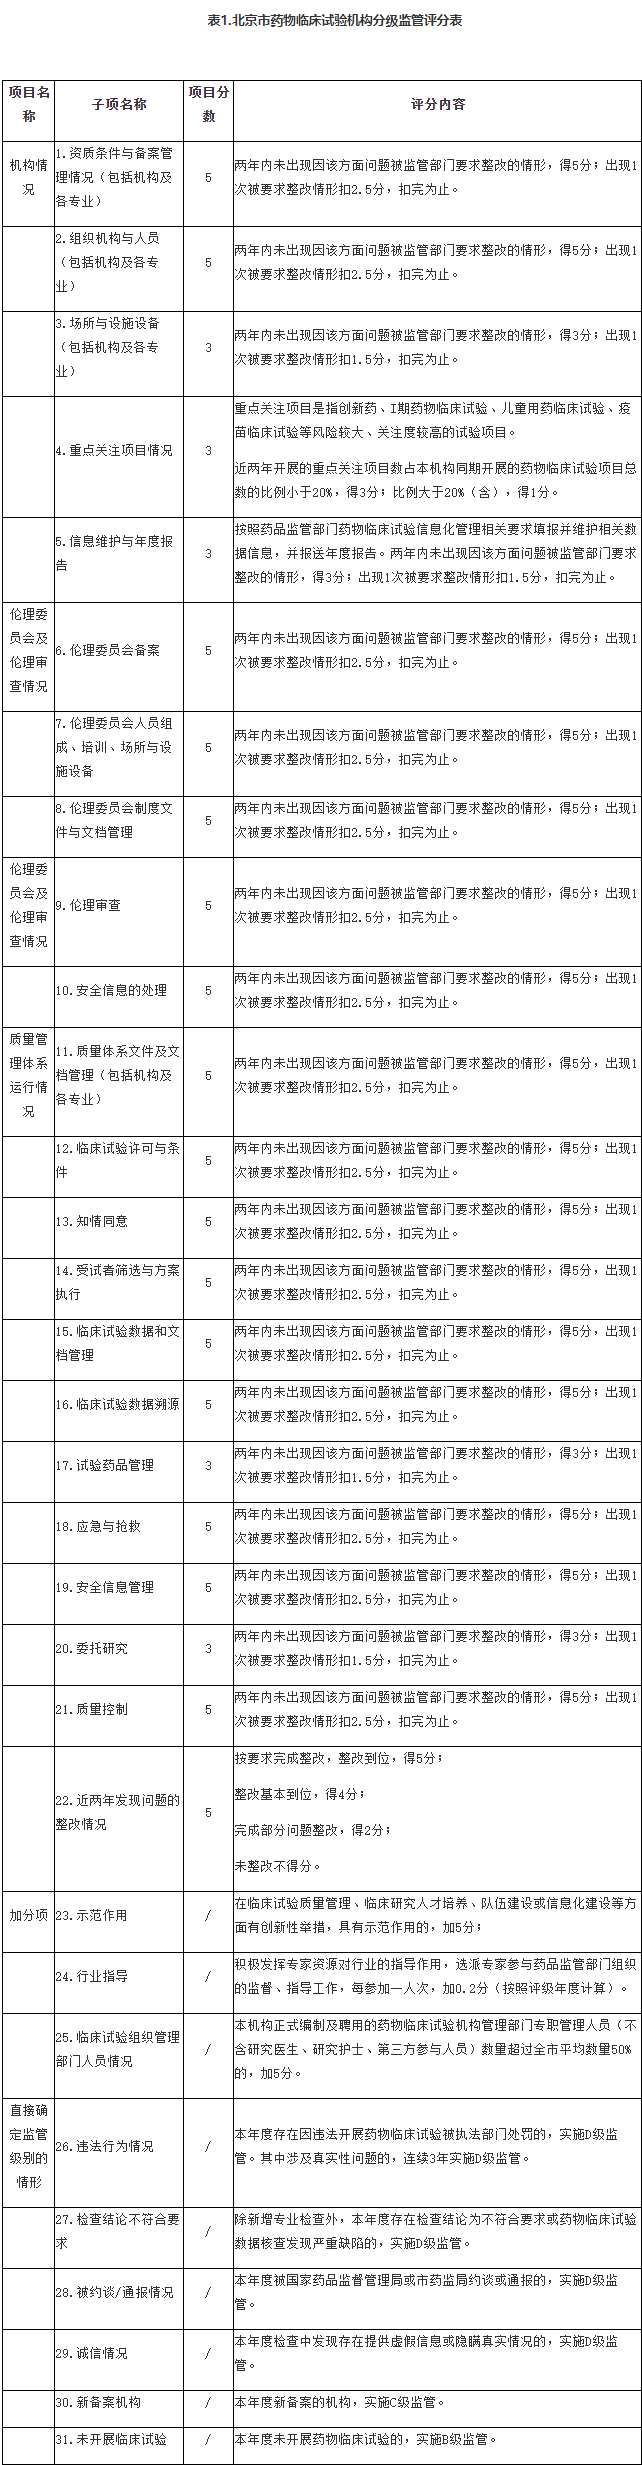 表1.北京市药物临床试验机构分级监管评分表.png